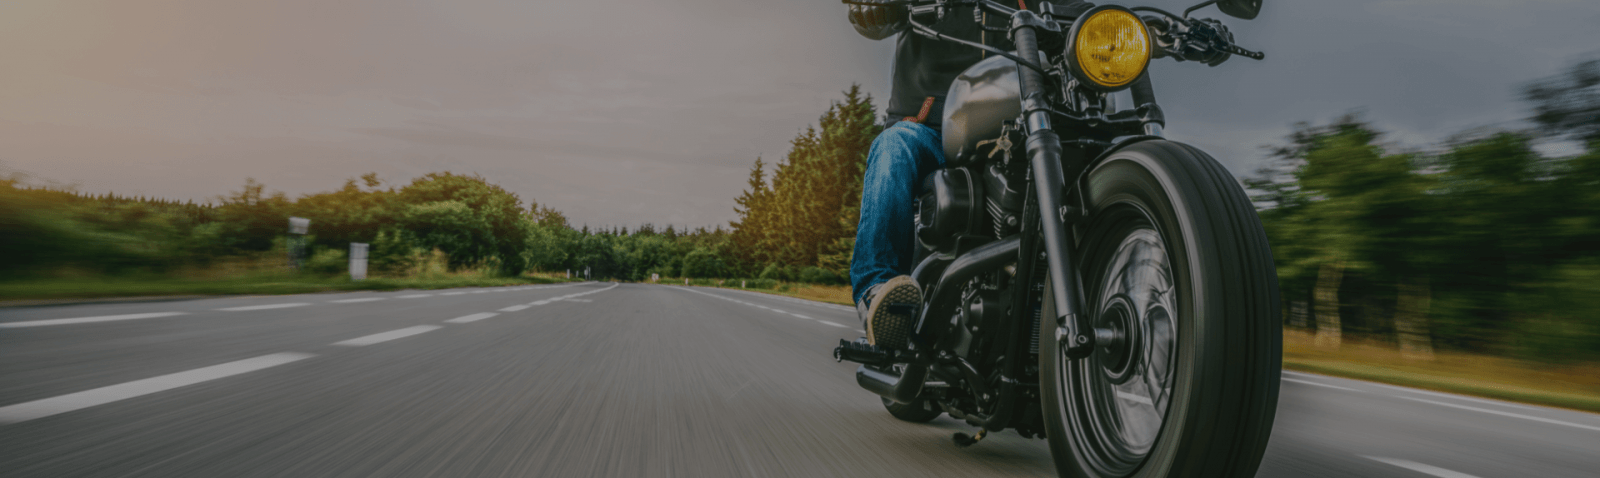 Особенности обучения вождению мотоцикла с нуля